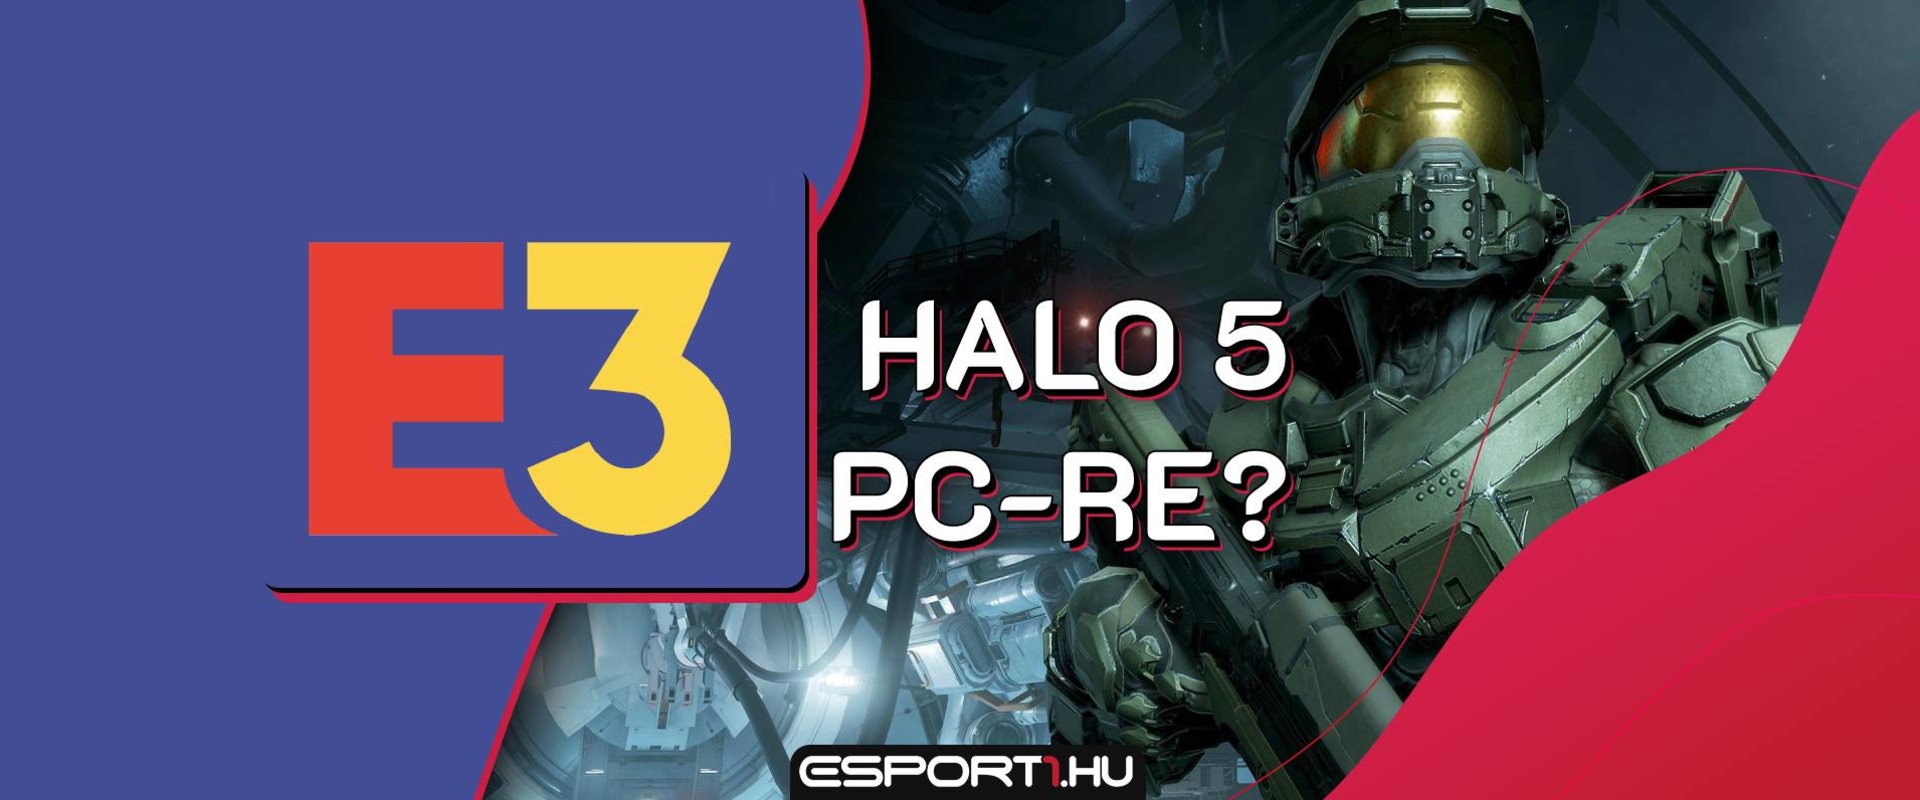 Ha hihetünk egy borítóképnek, akkor hamarosan PC-re is megérkezik a Halo 5!